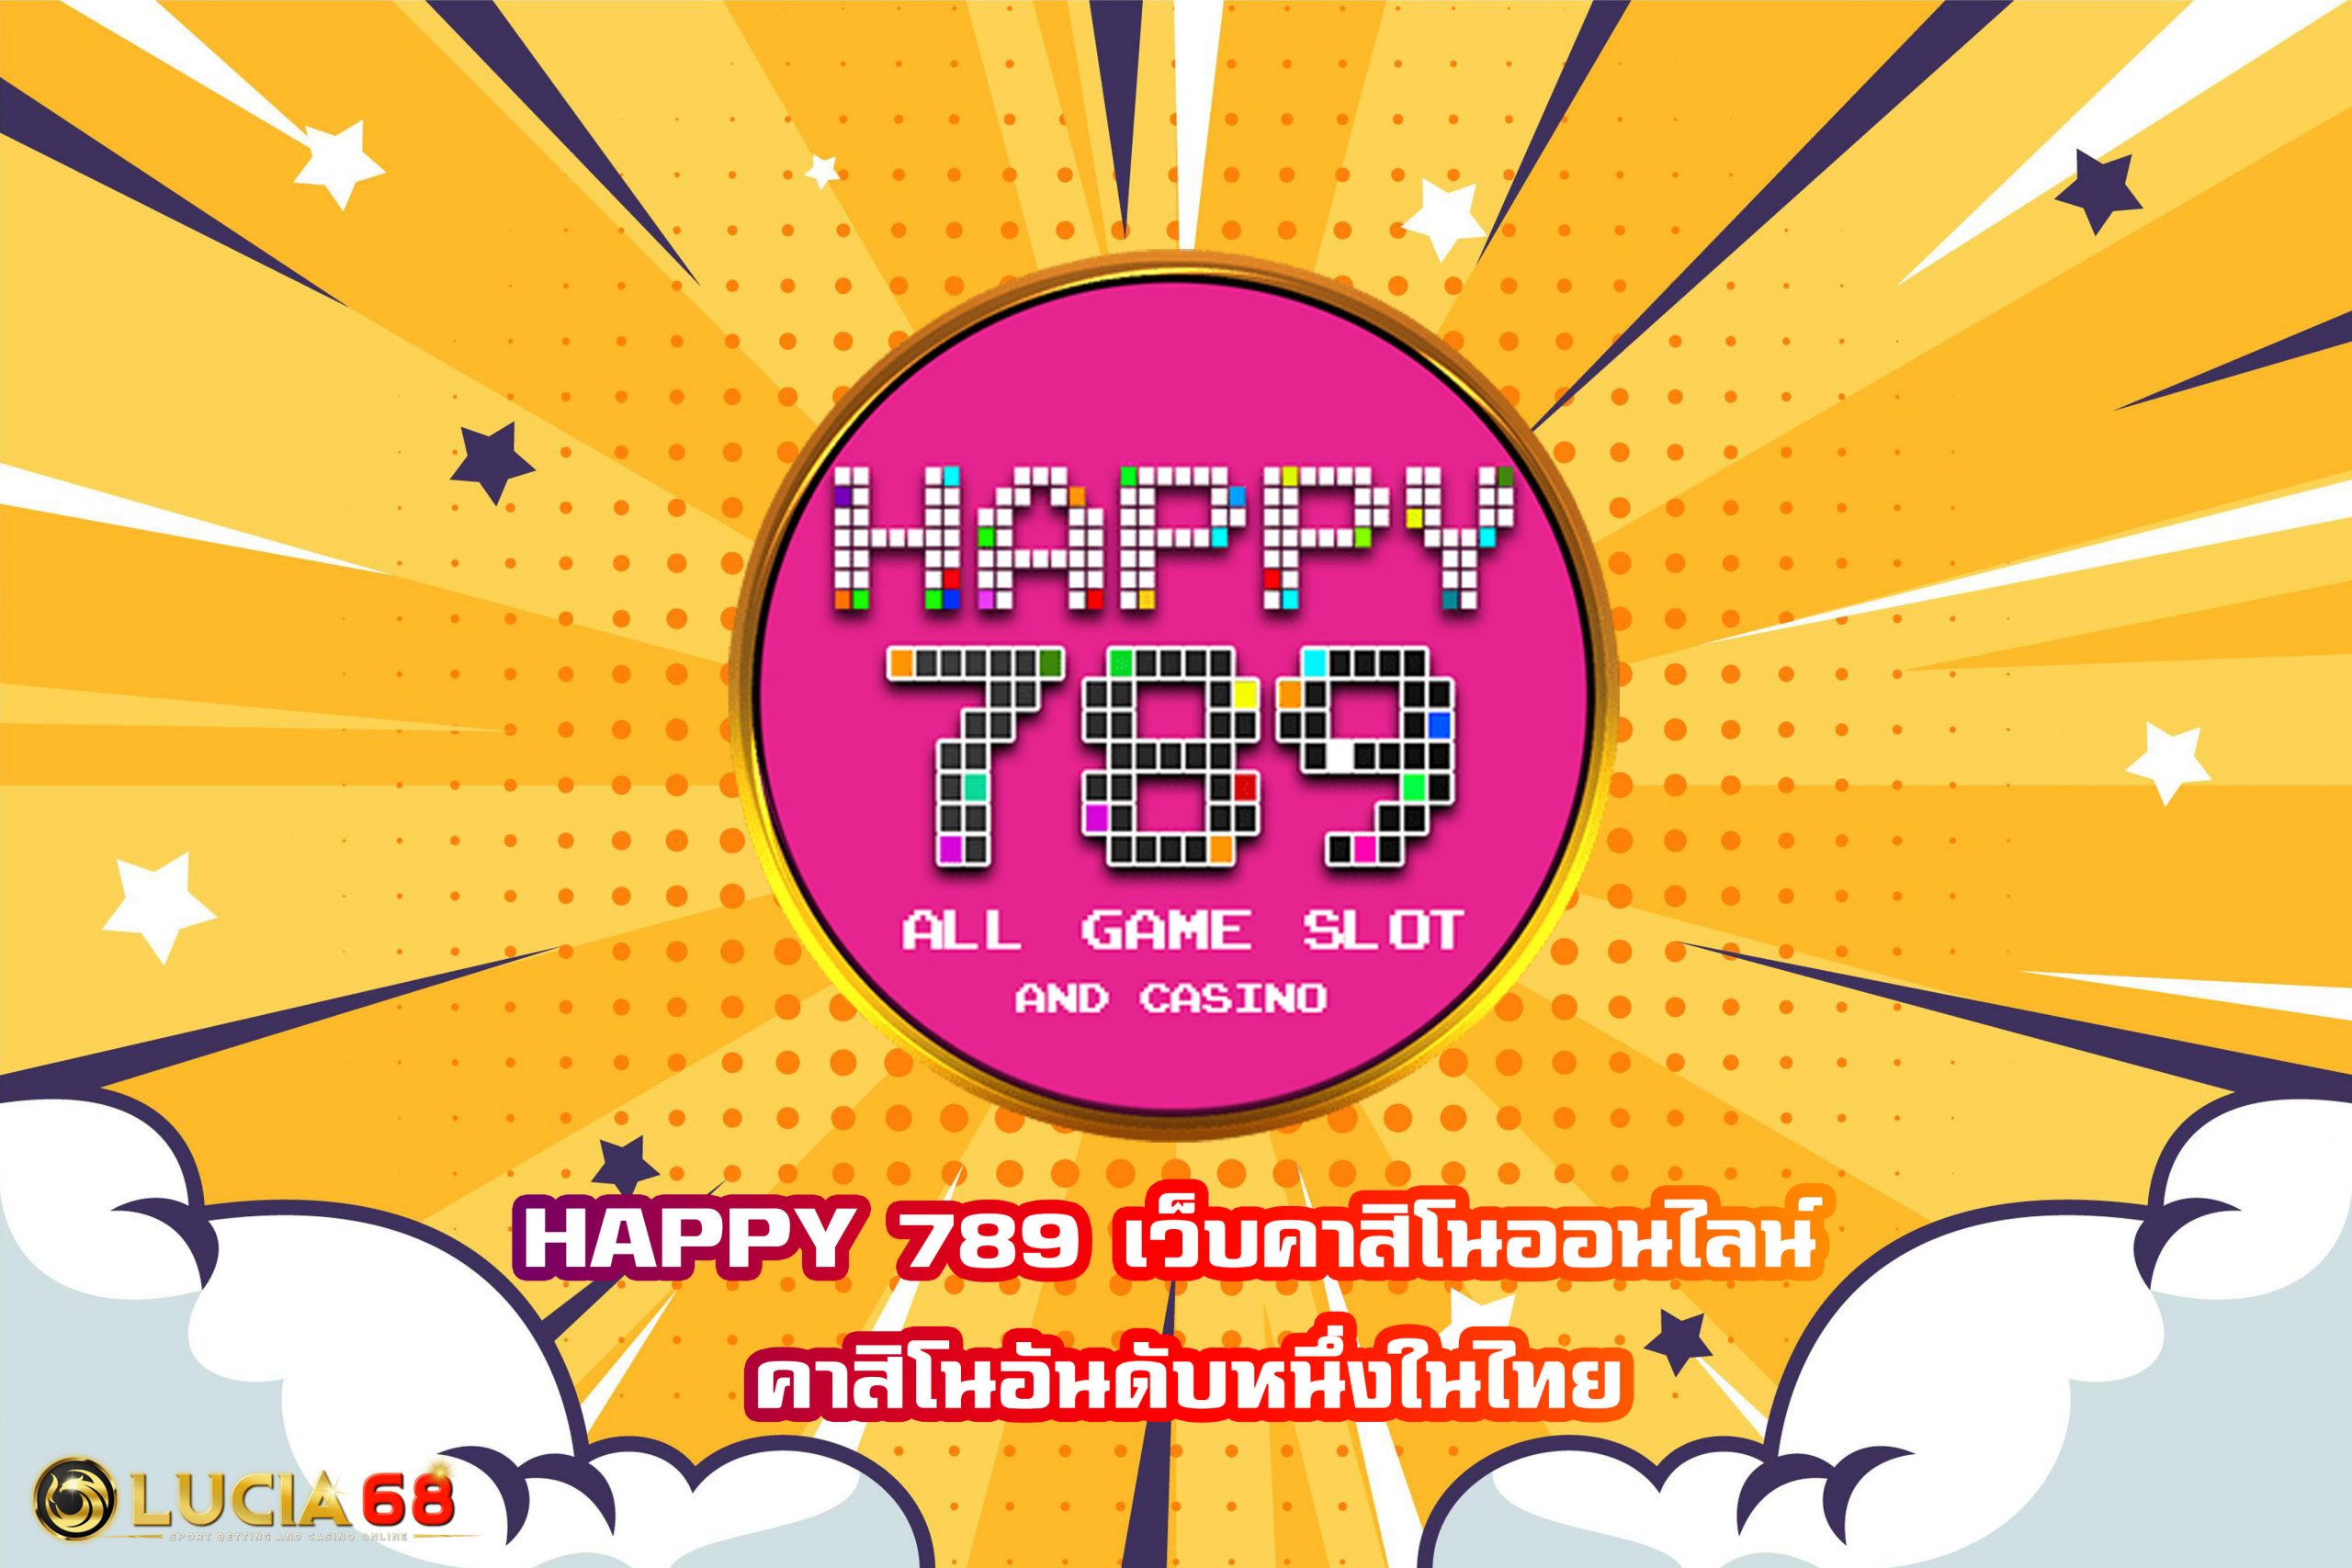 HAPPY 789 เว็บคาสิโนออนไลน์ คาสิโนอันดับหนึ่งในไทย